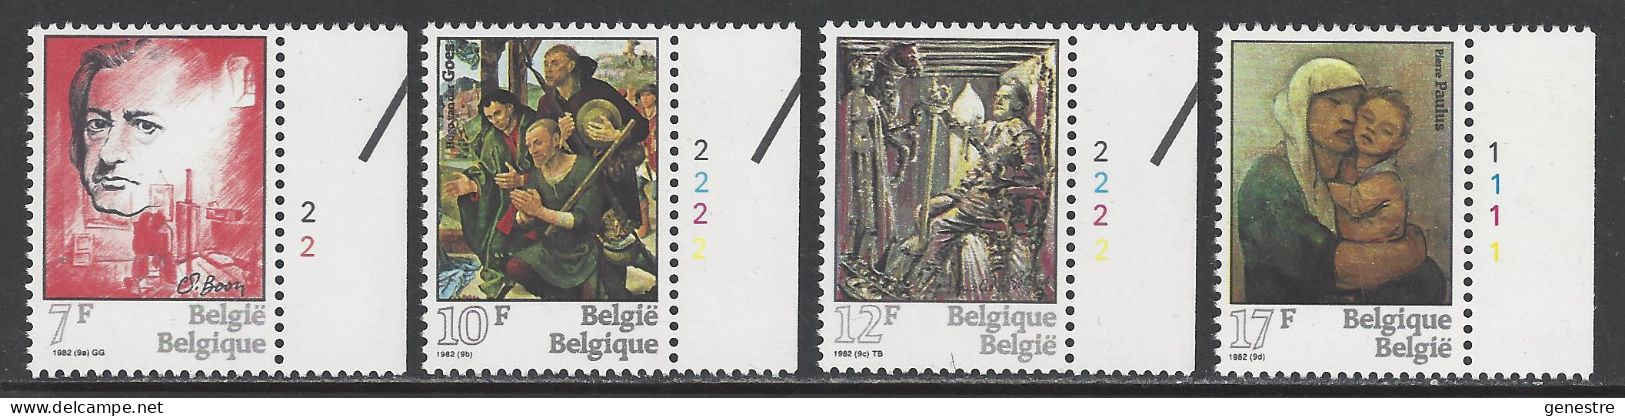 Belgique - 1982 - COB 2060 à 2063 ** (MNH) - Numéros De Planche 2221 - 1971-1980